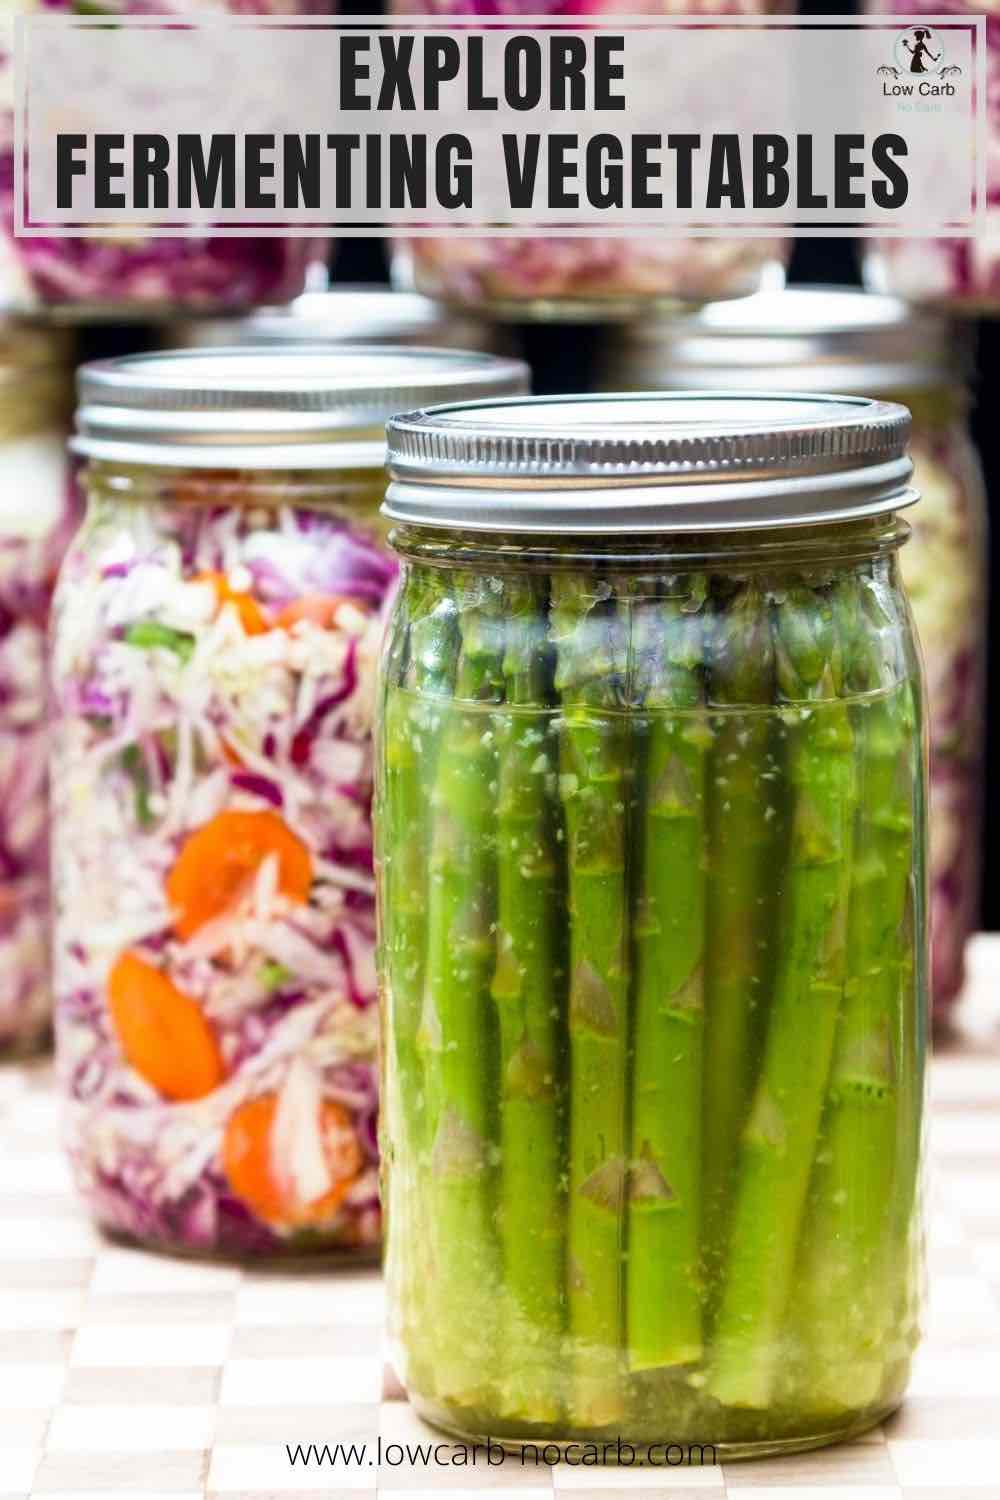 Fermented asparagus in a jar.